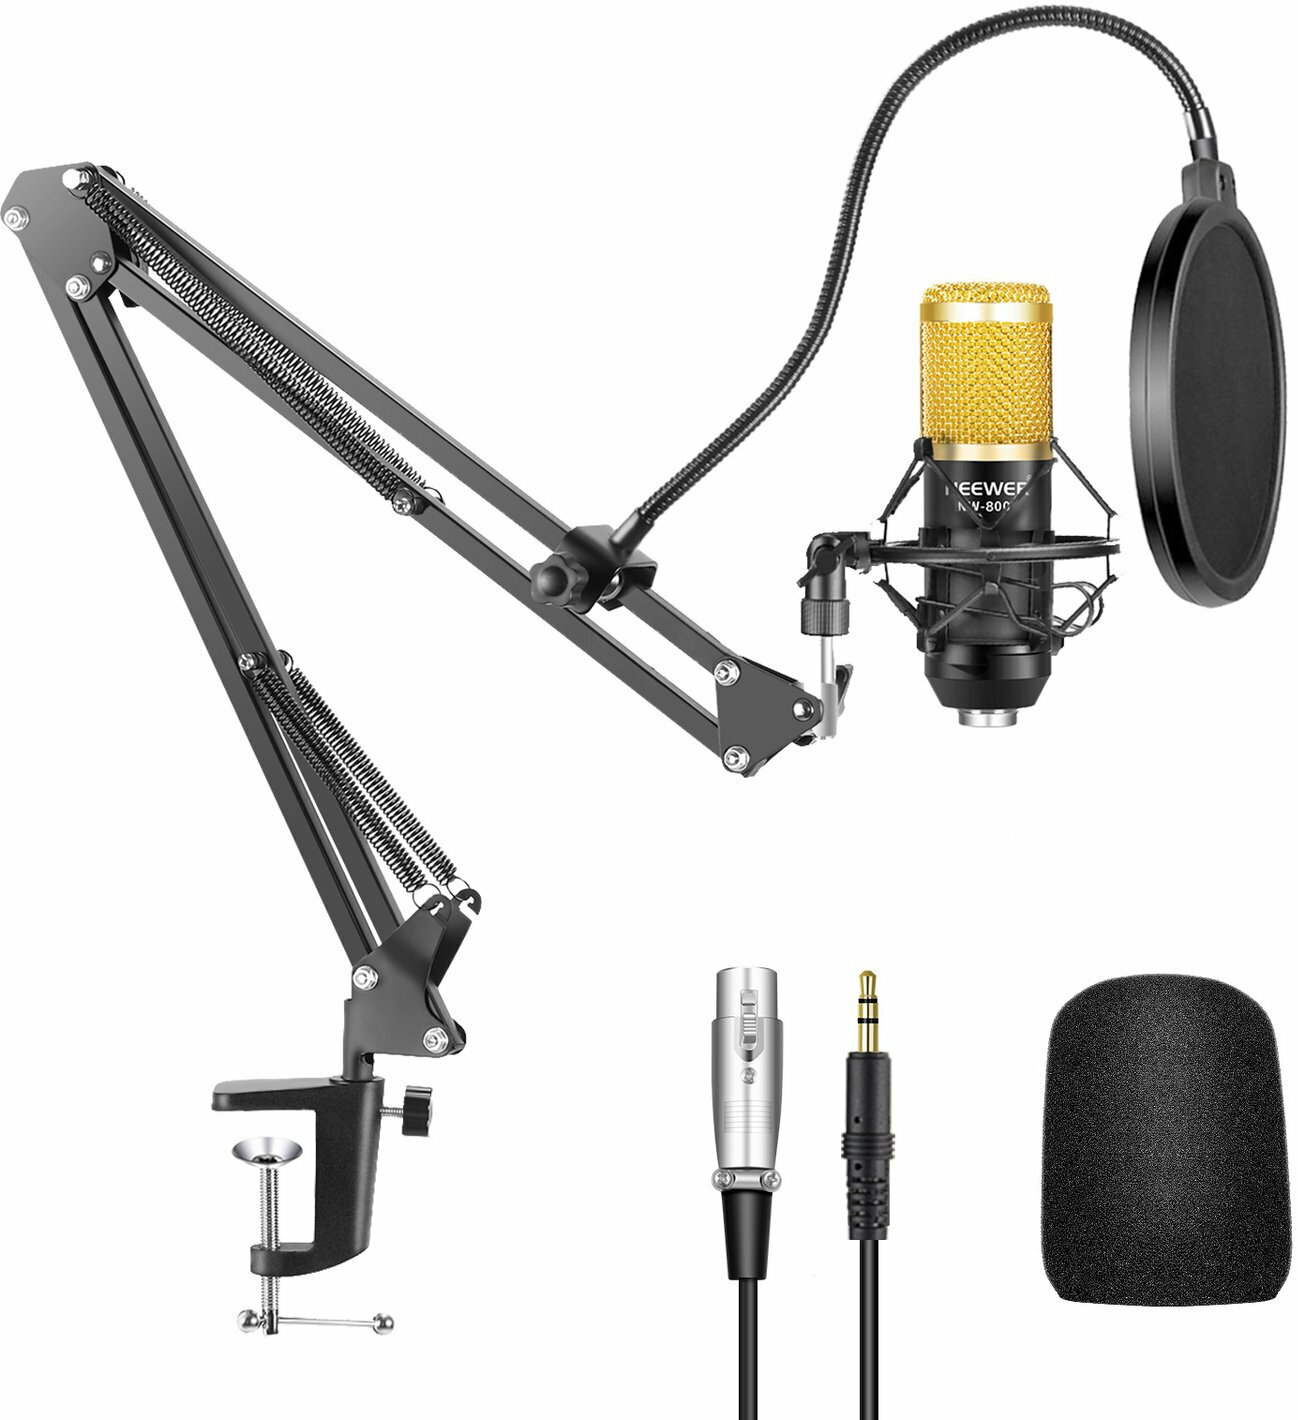 Microfon cu condensator pentru studio Neewer NW-800 6in1 Microfon cu condensator pentru studio